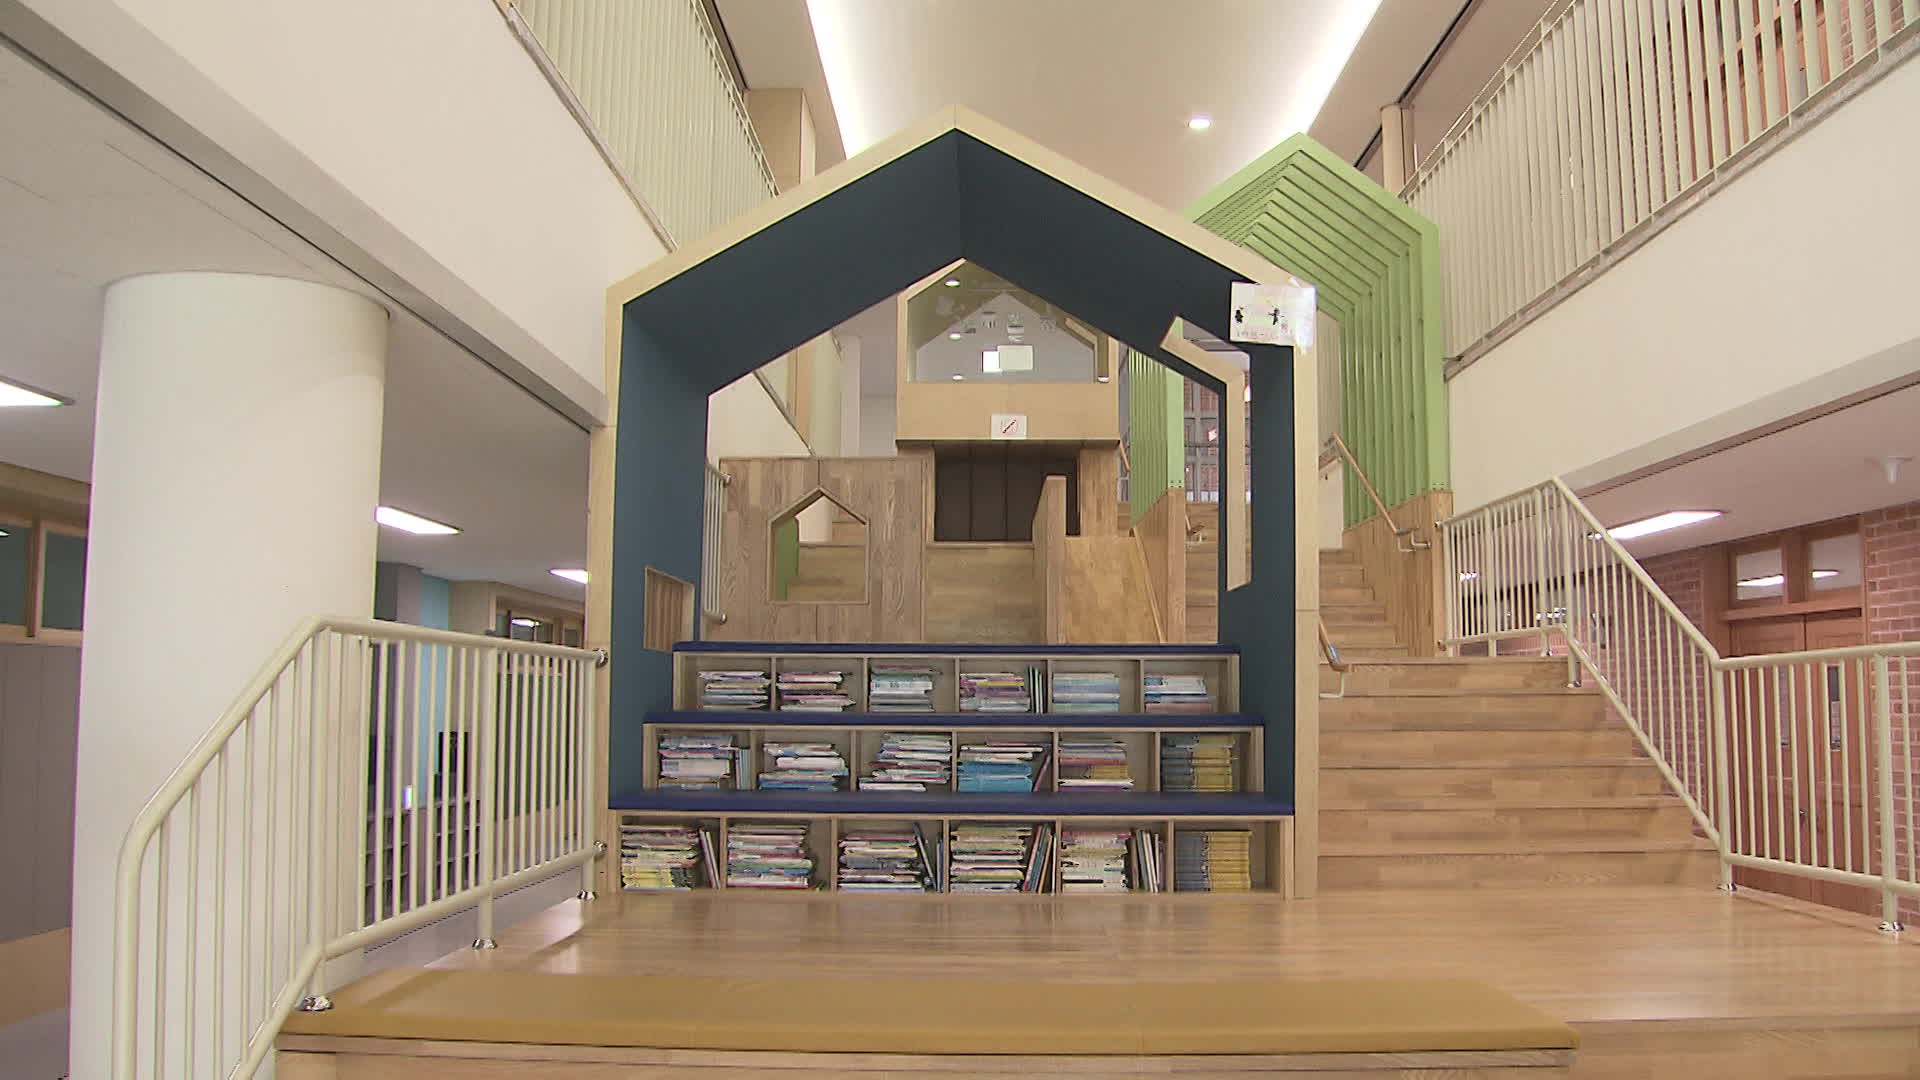 층마다  채광이 잘 들어오는 계단형 쉼터인 ‘솔빛길’이 있다. 이곳은 독서 공간으로도 활용된다.